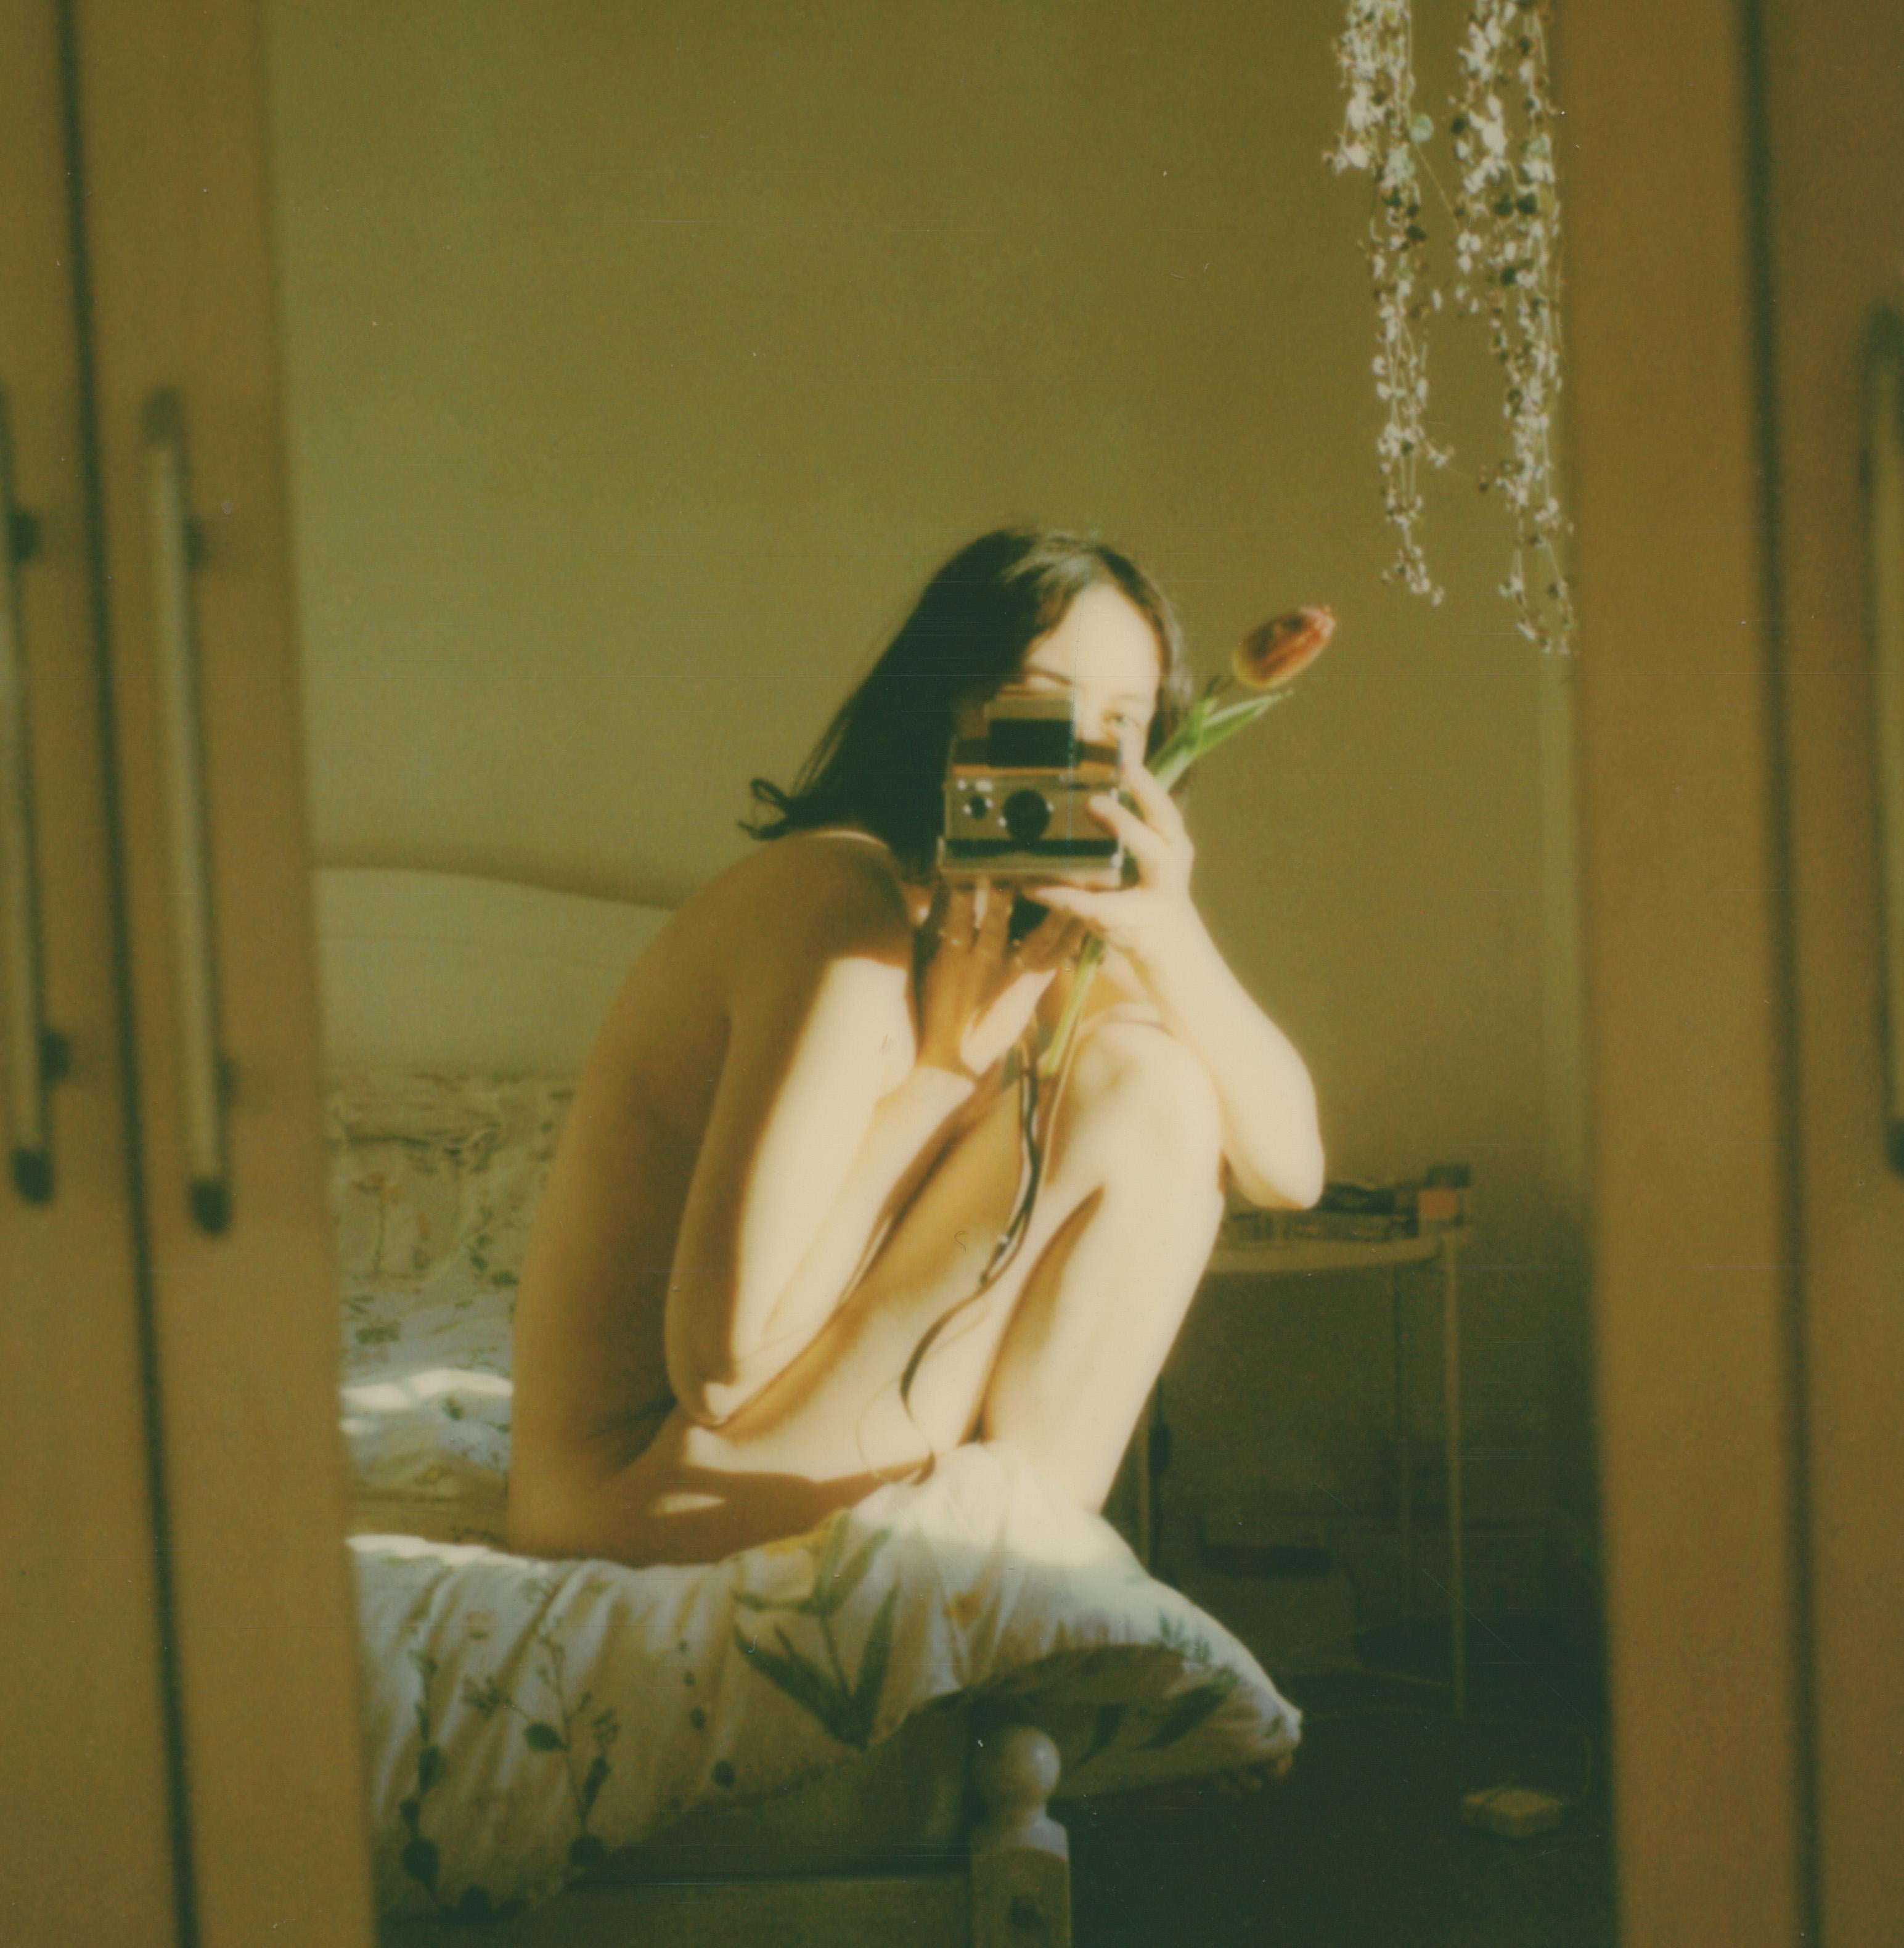 Leanne Surfleet Nude Photograph - Self-Portrait - Contemporary, Polaroid, Color, Portrait